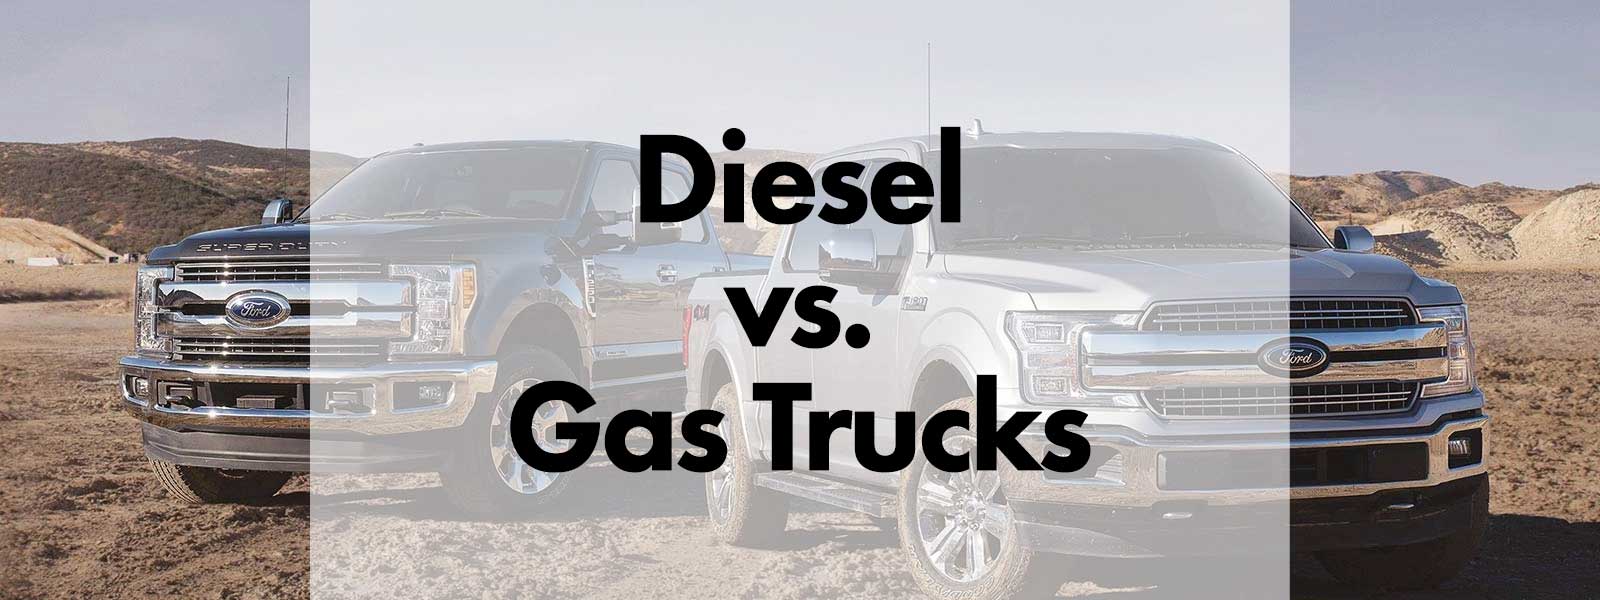 Diesel vs. Gas Trucks